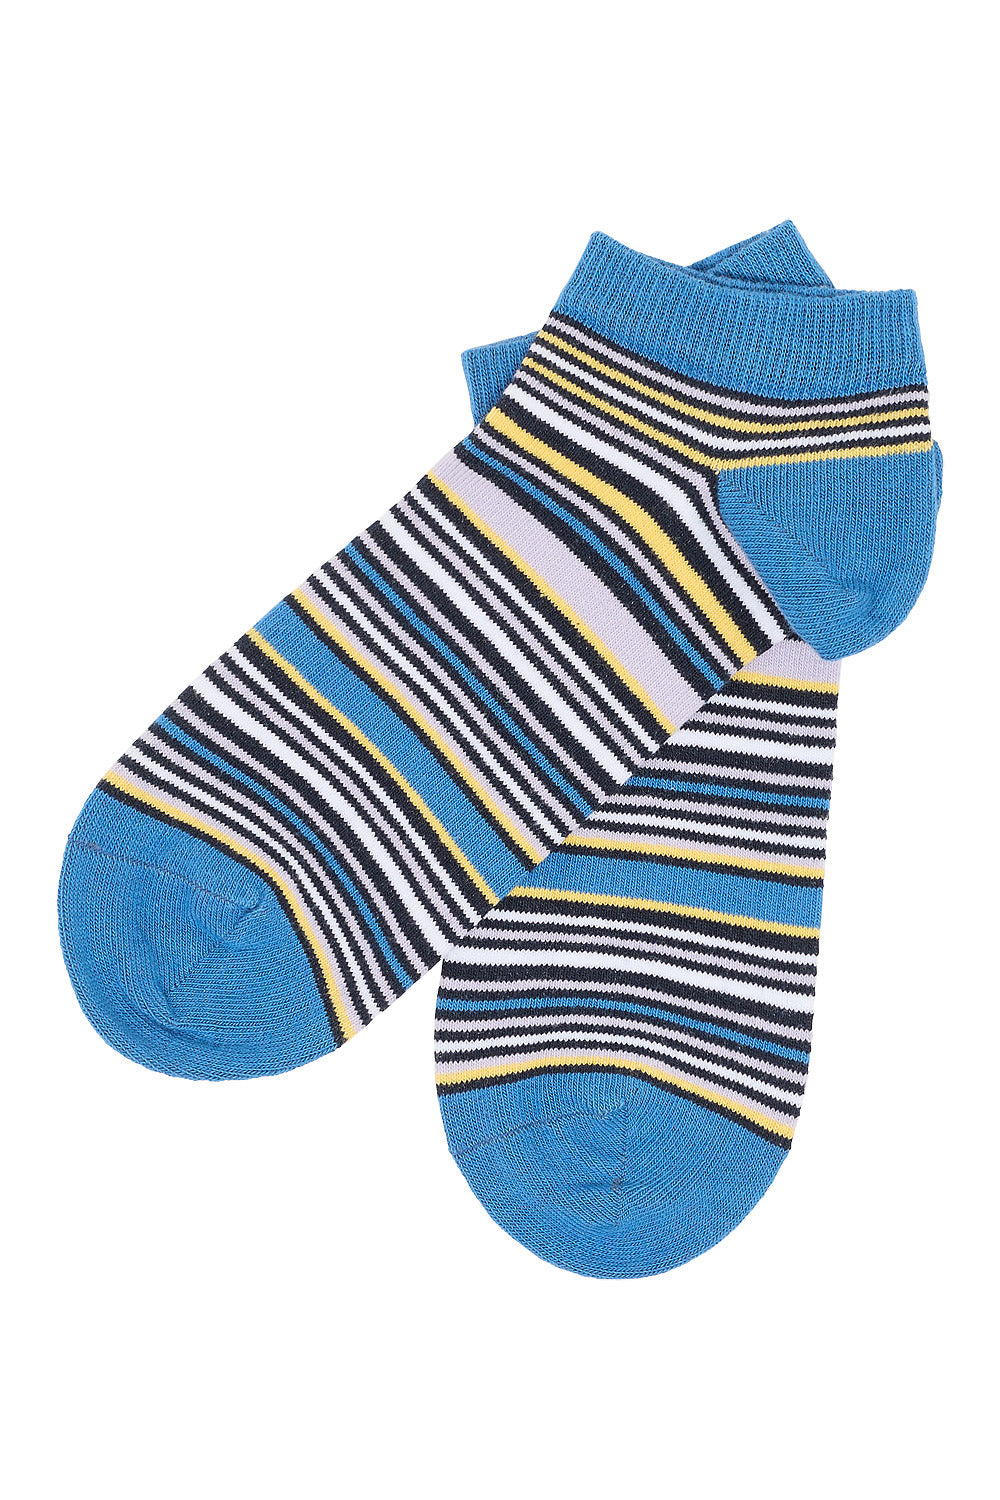 Socquettes rayures bleues en coton bio